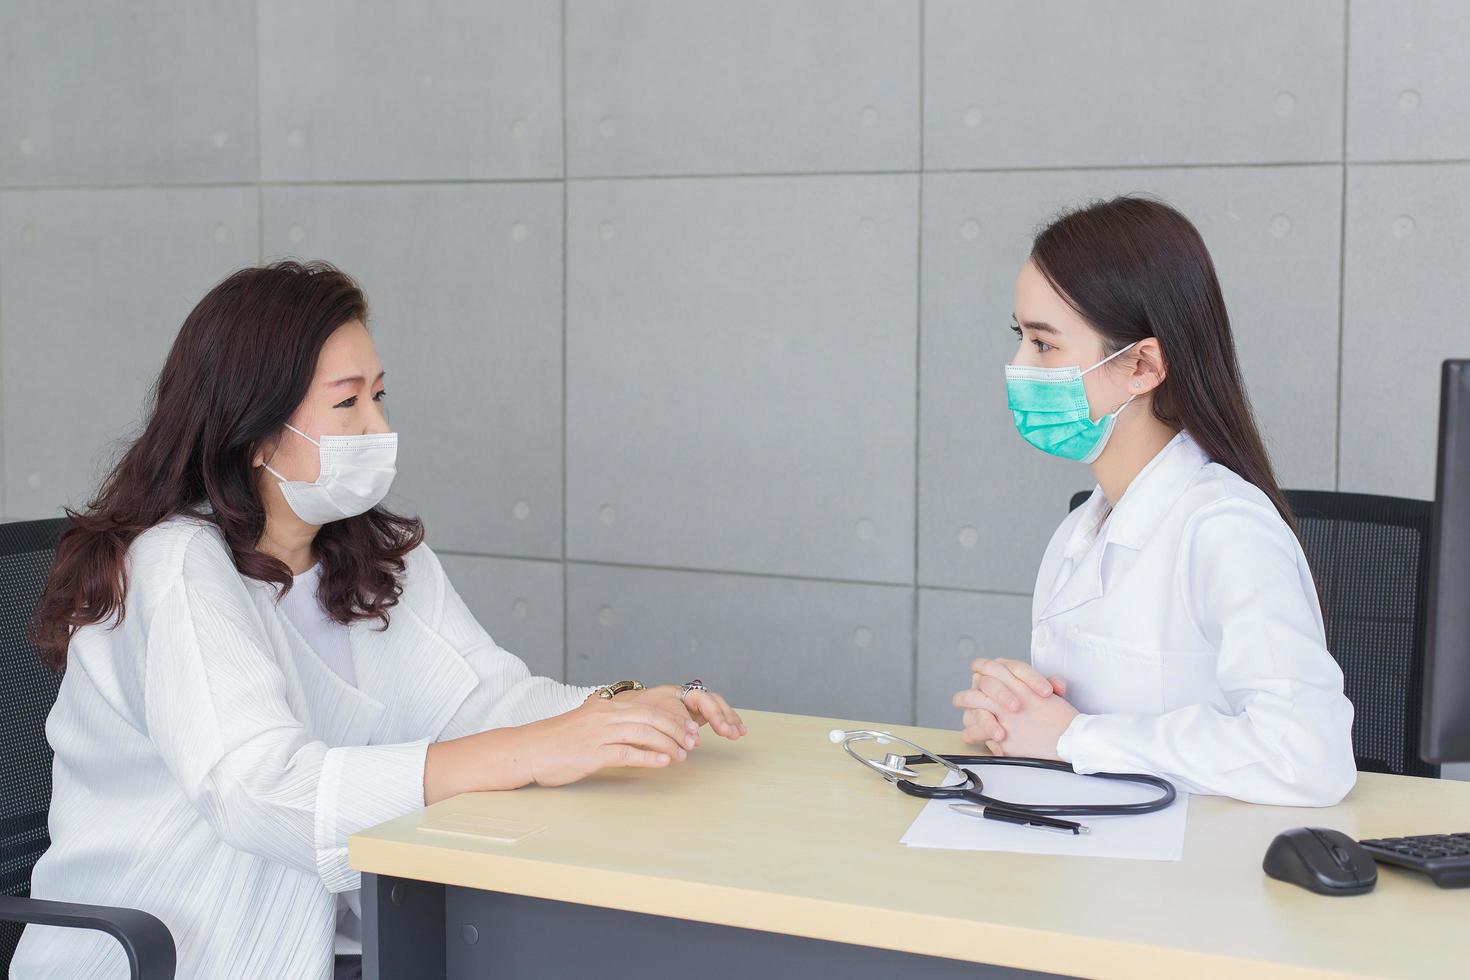 médica asiática profissional fala com seu paciente enquanto ela usa máscara facial médica no hospital em cuidados de saúde, poluição pm2.5, novo conceito de proteção normal e coronavírus. foto